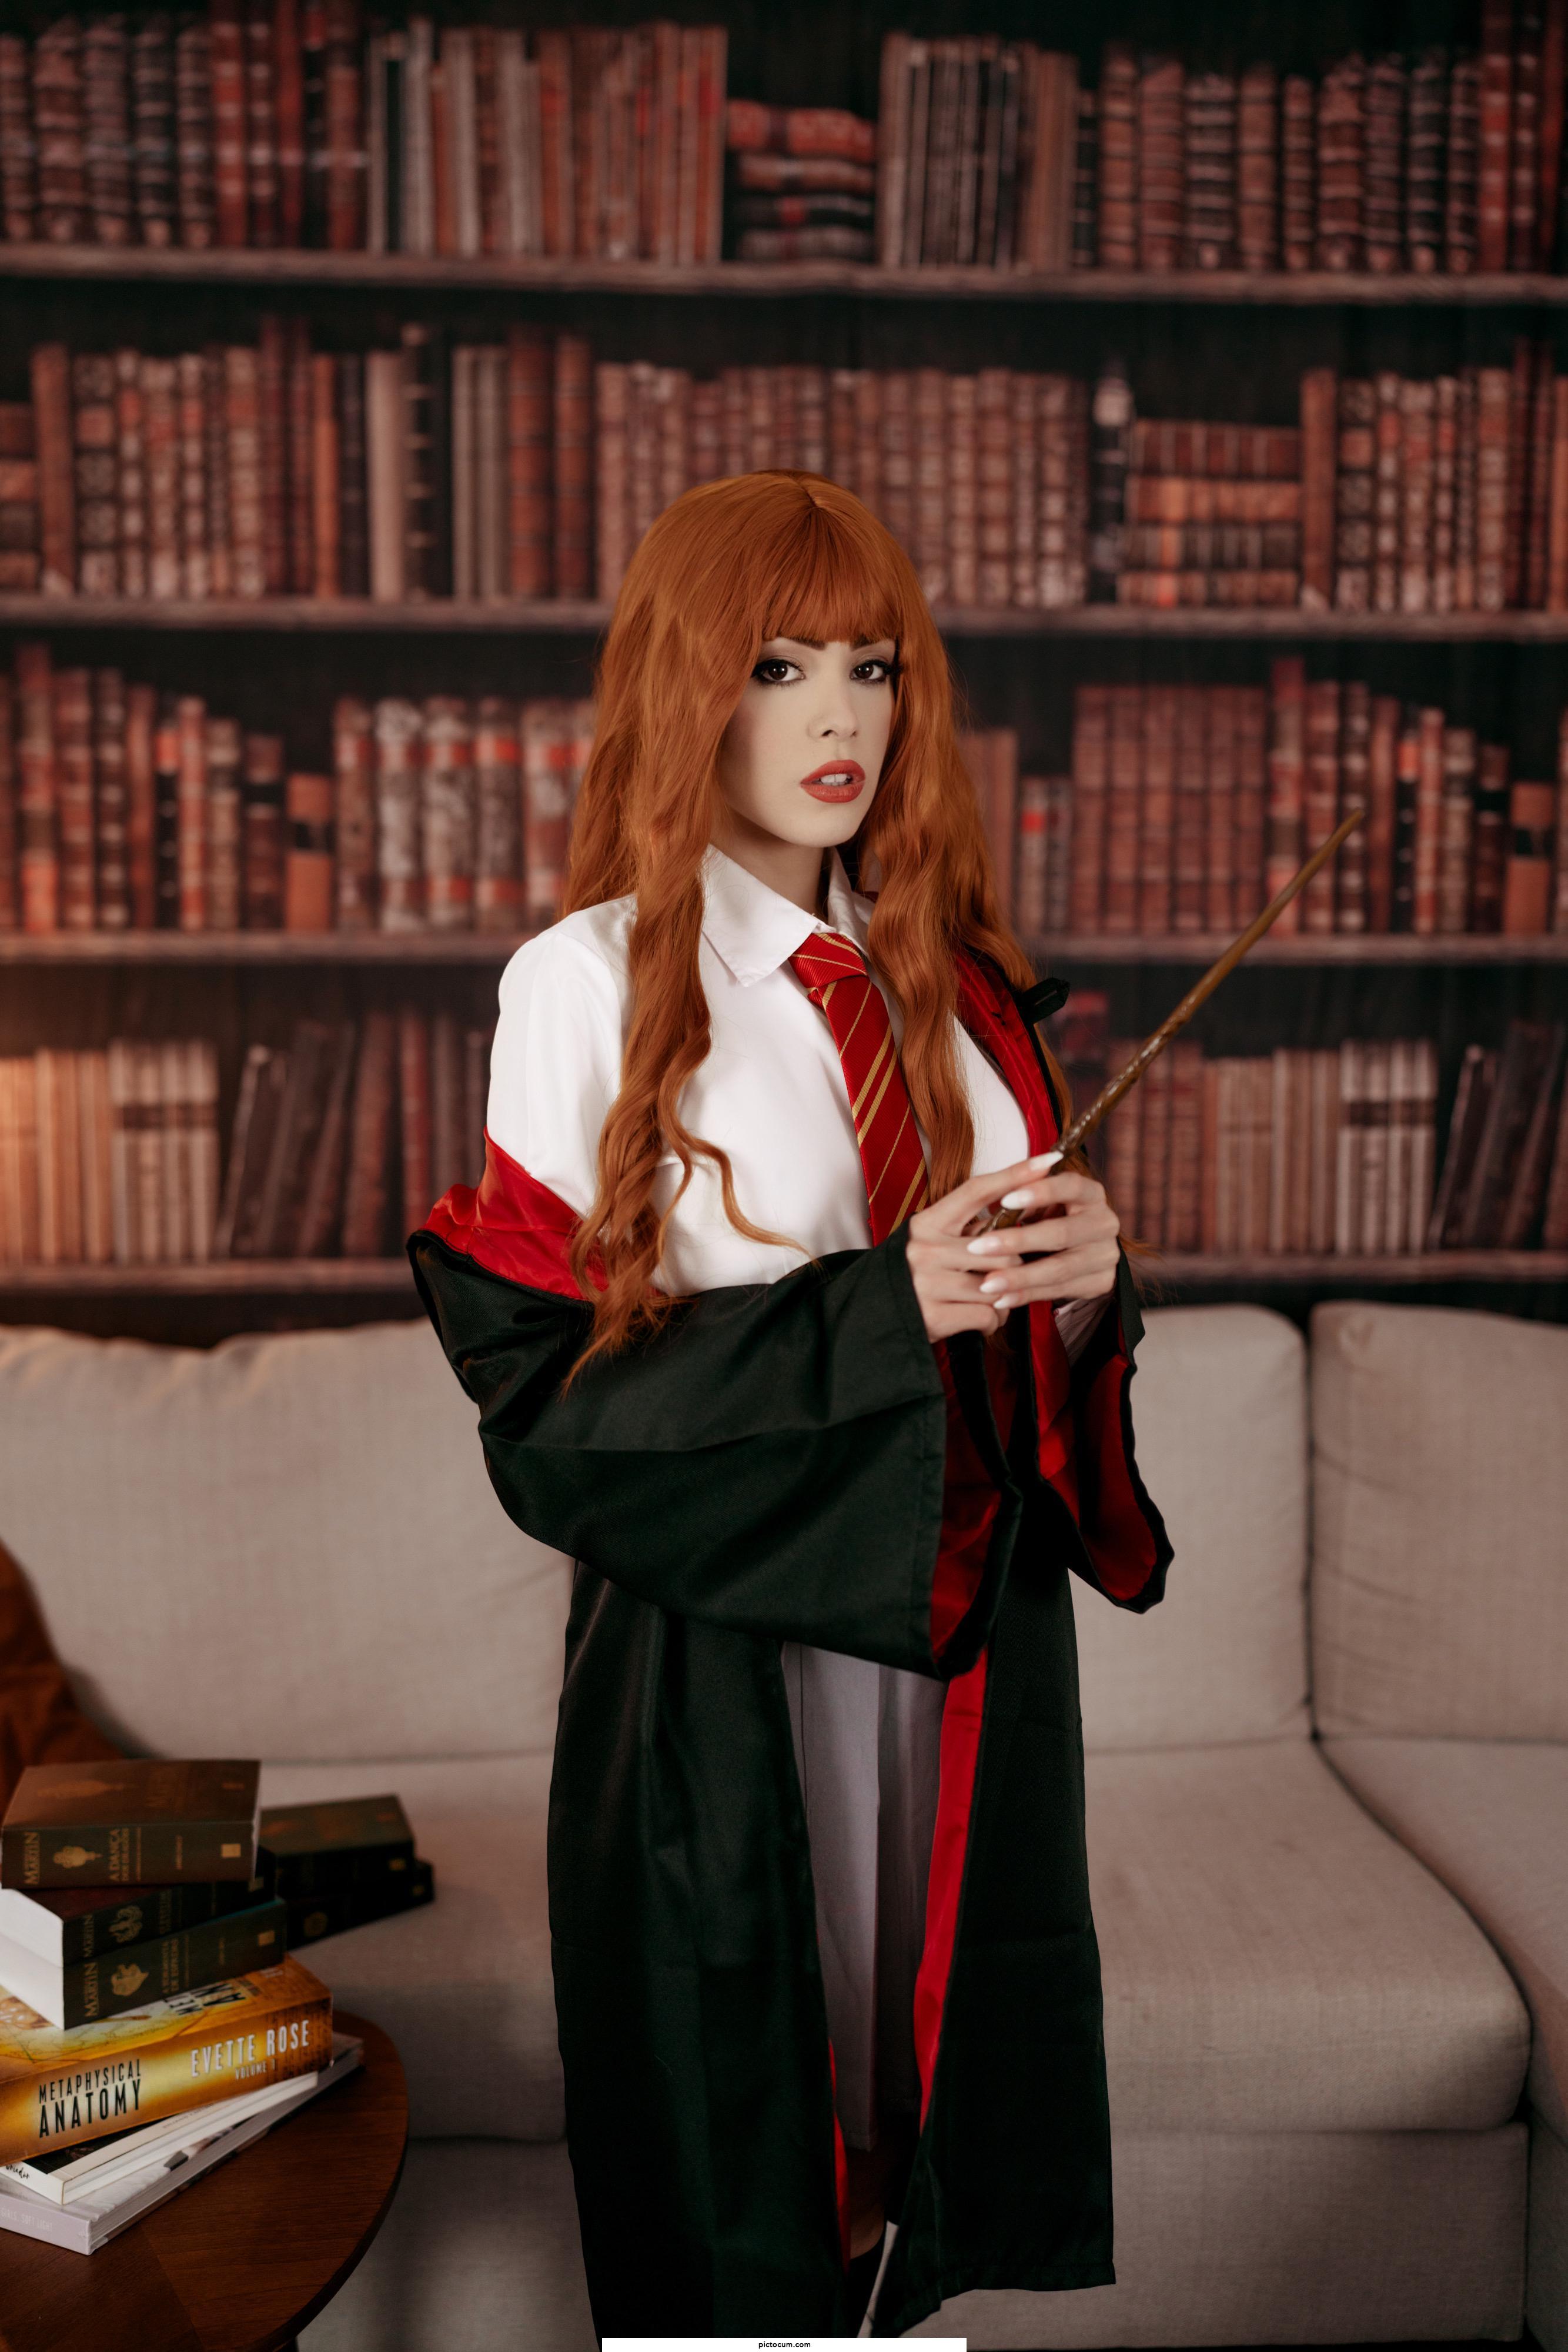 Hermione from Harry Potter by Waifu Korra